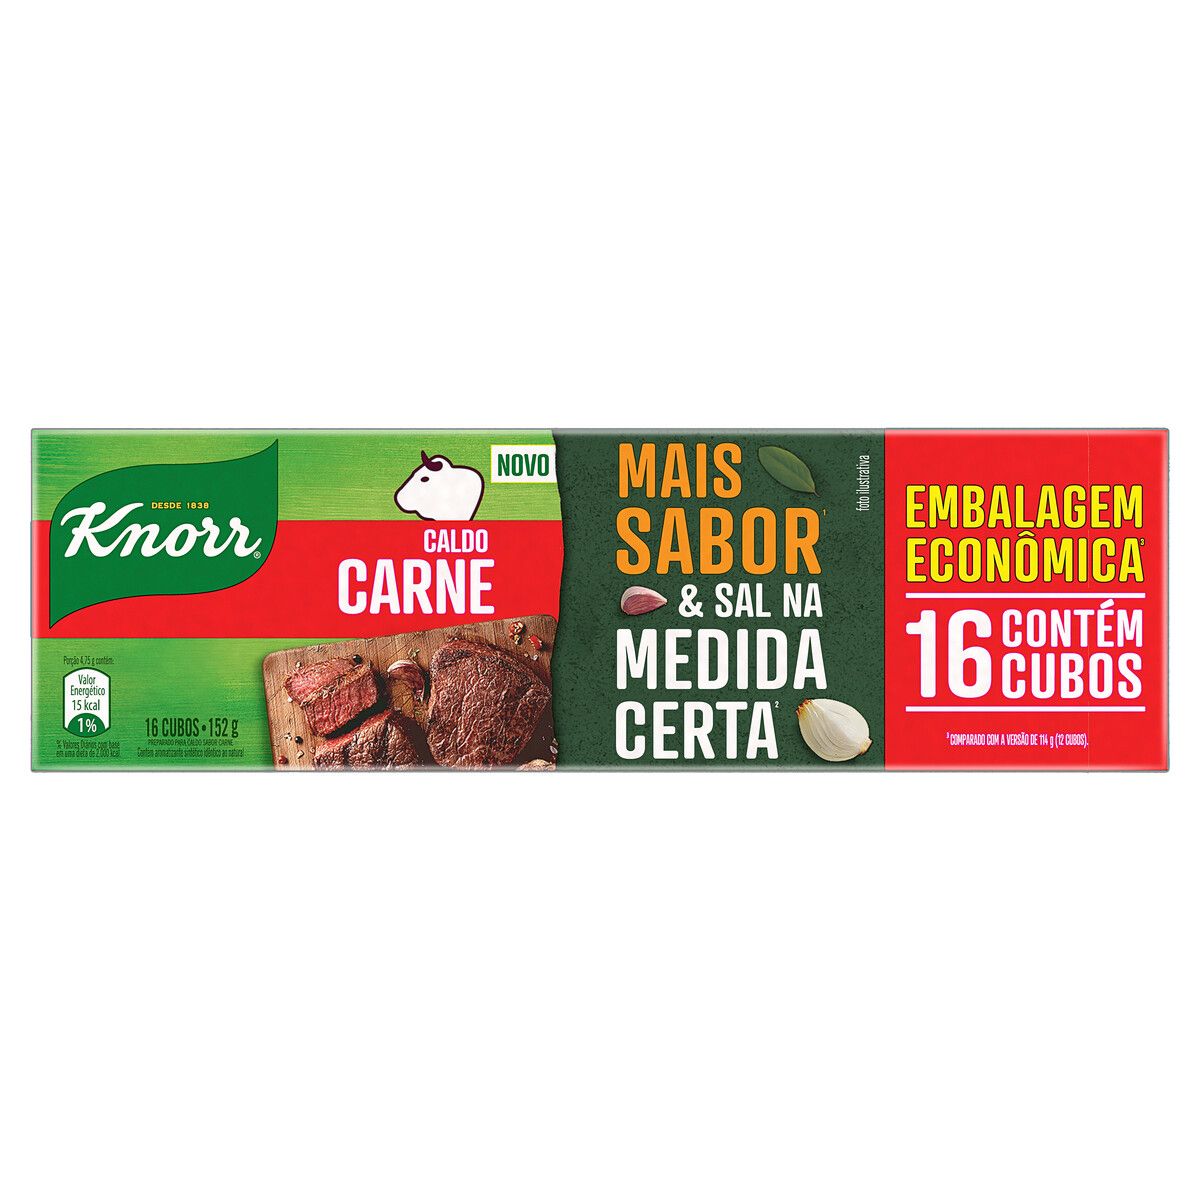 Caldo Knorr Carne Mais Sabor Caixa 152g Embalagem Econômica